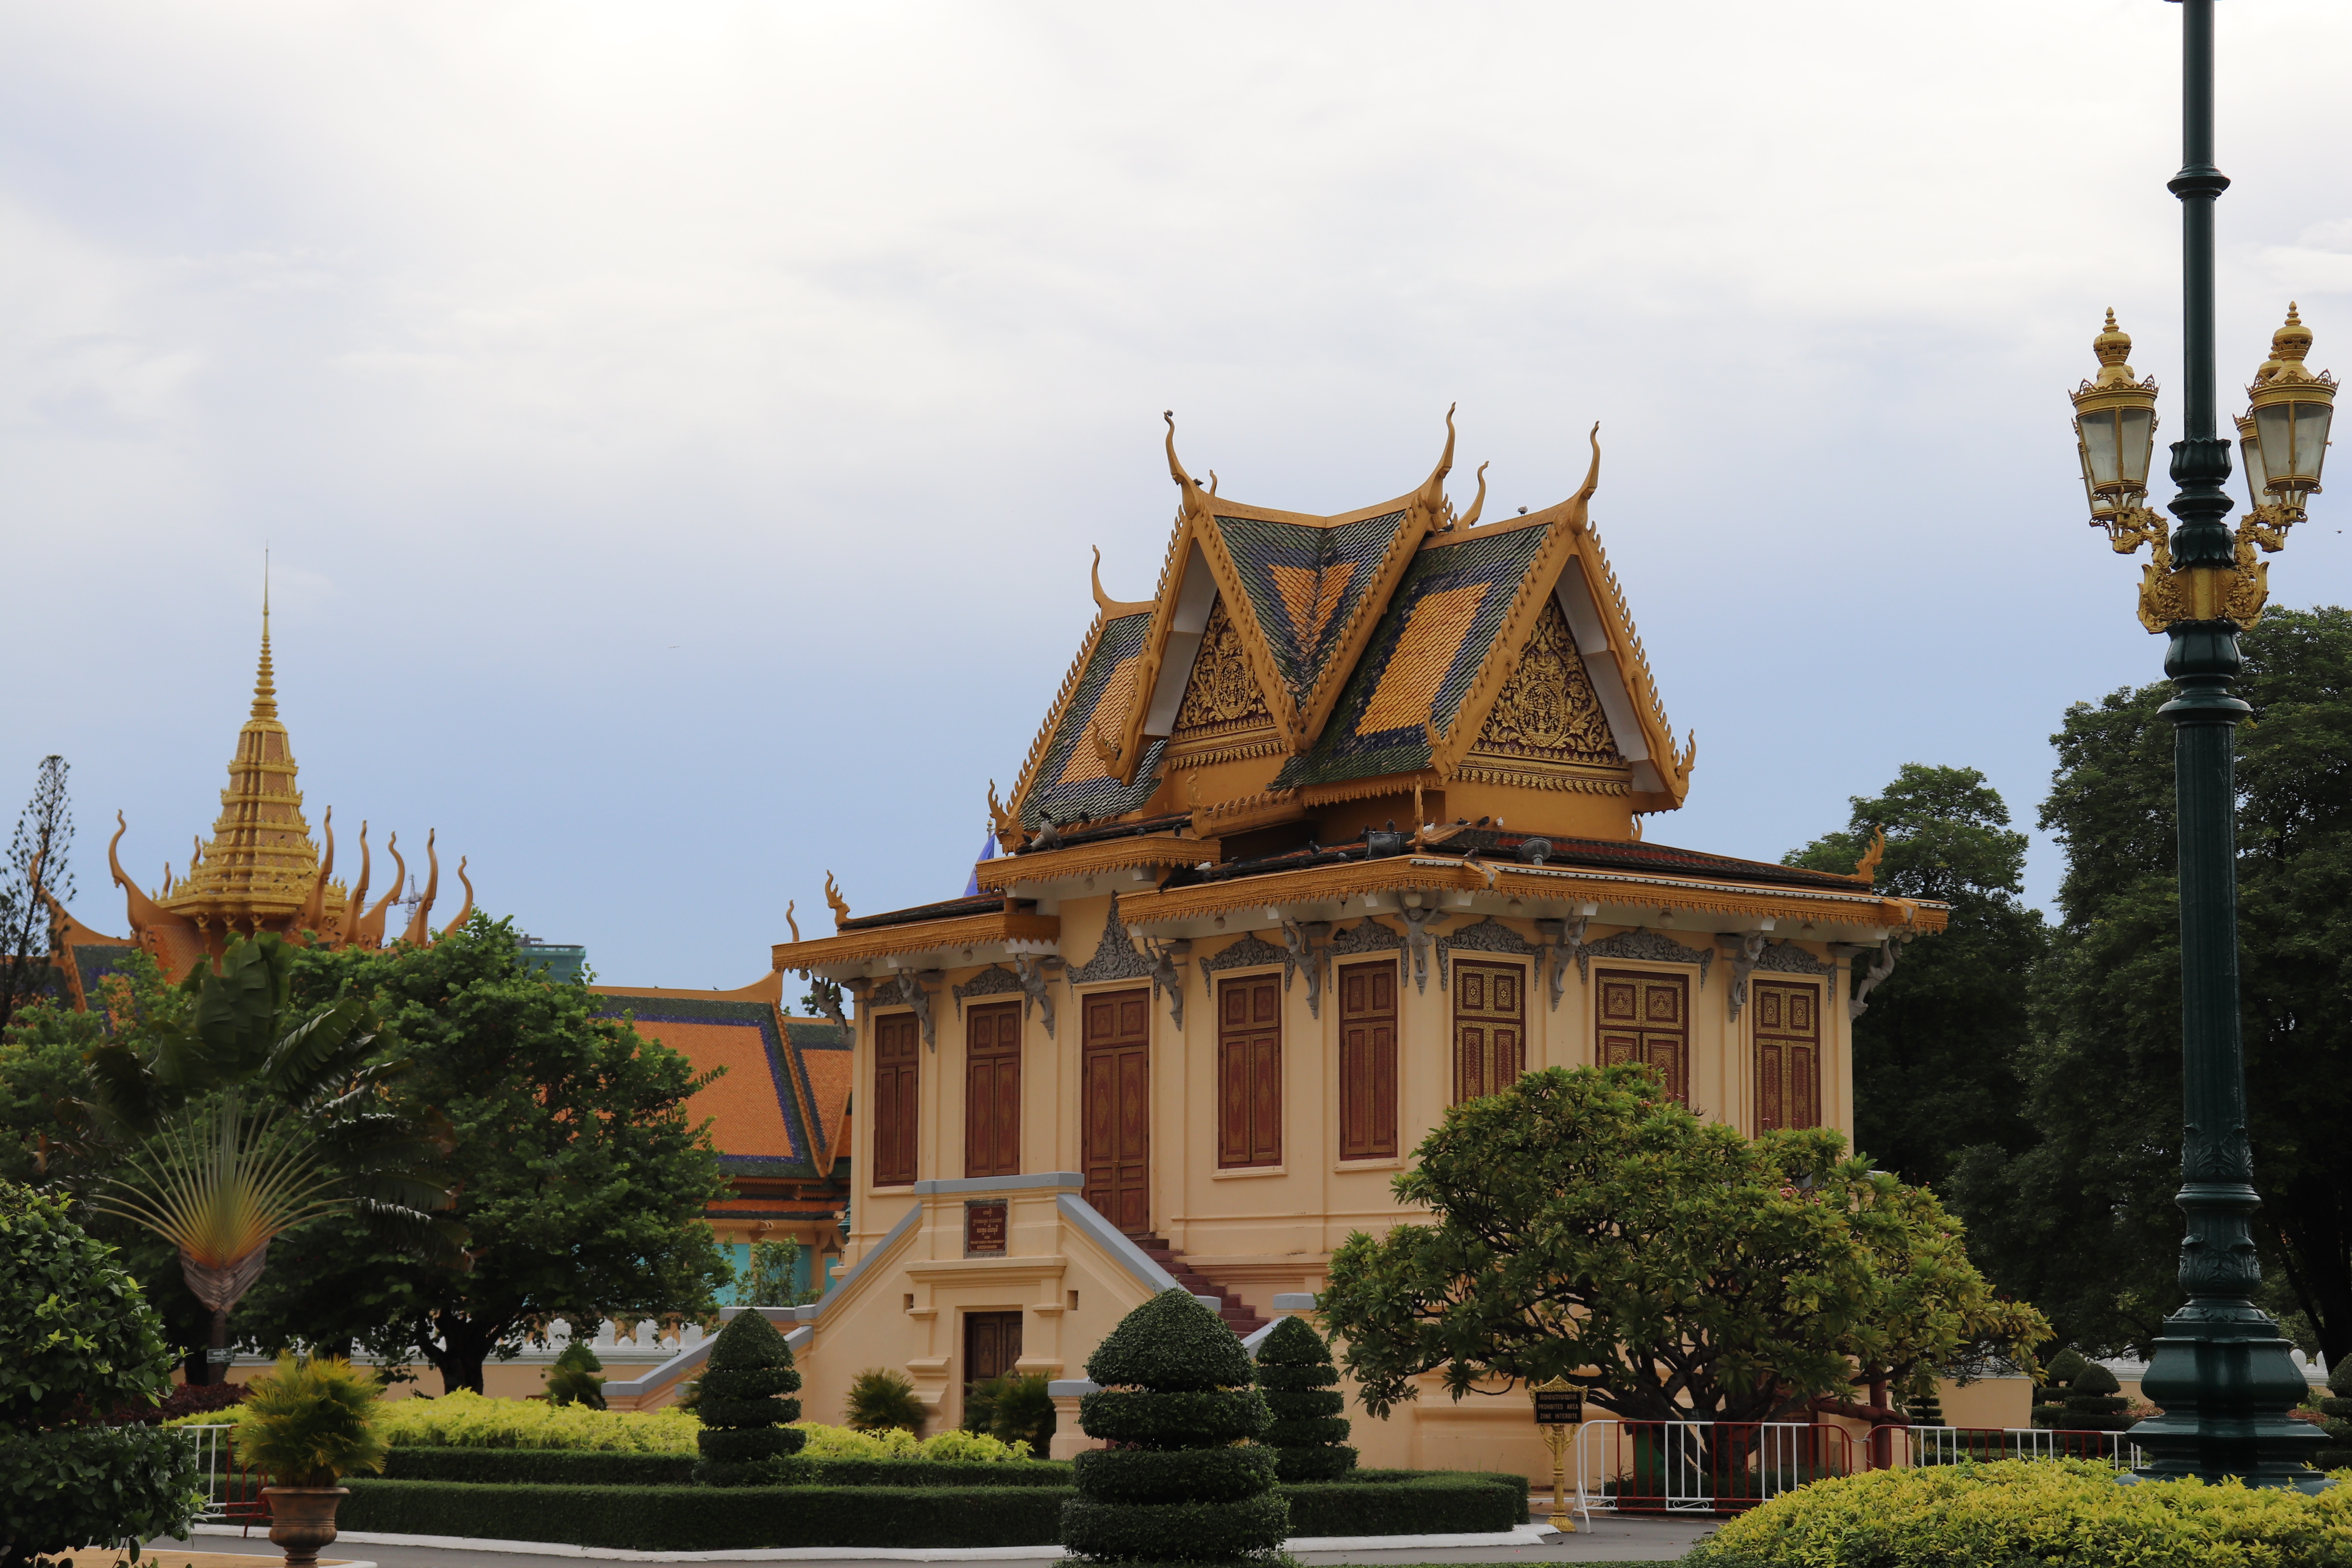 öffnungszeiten königspalast phnom penh